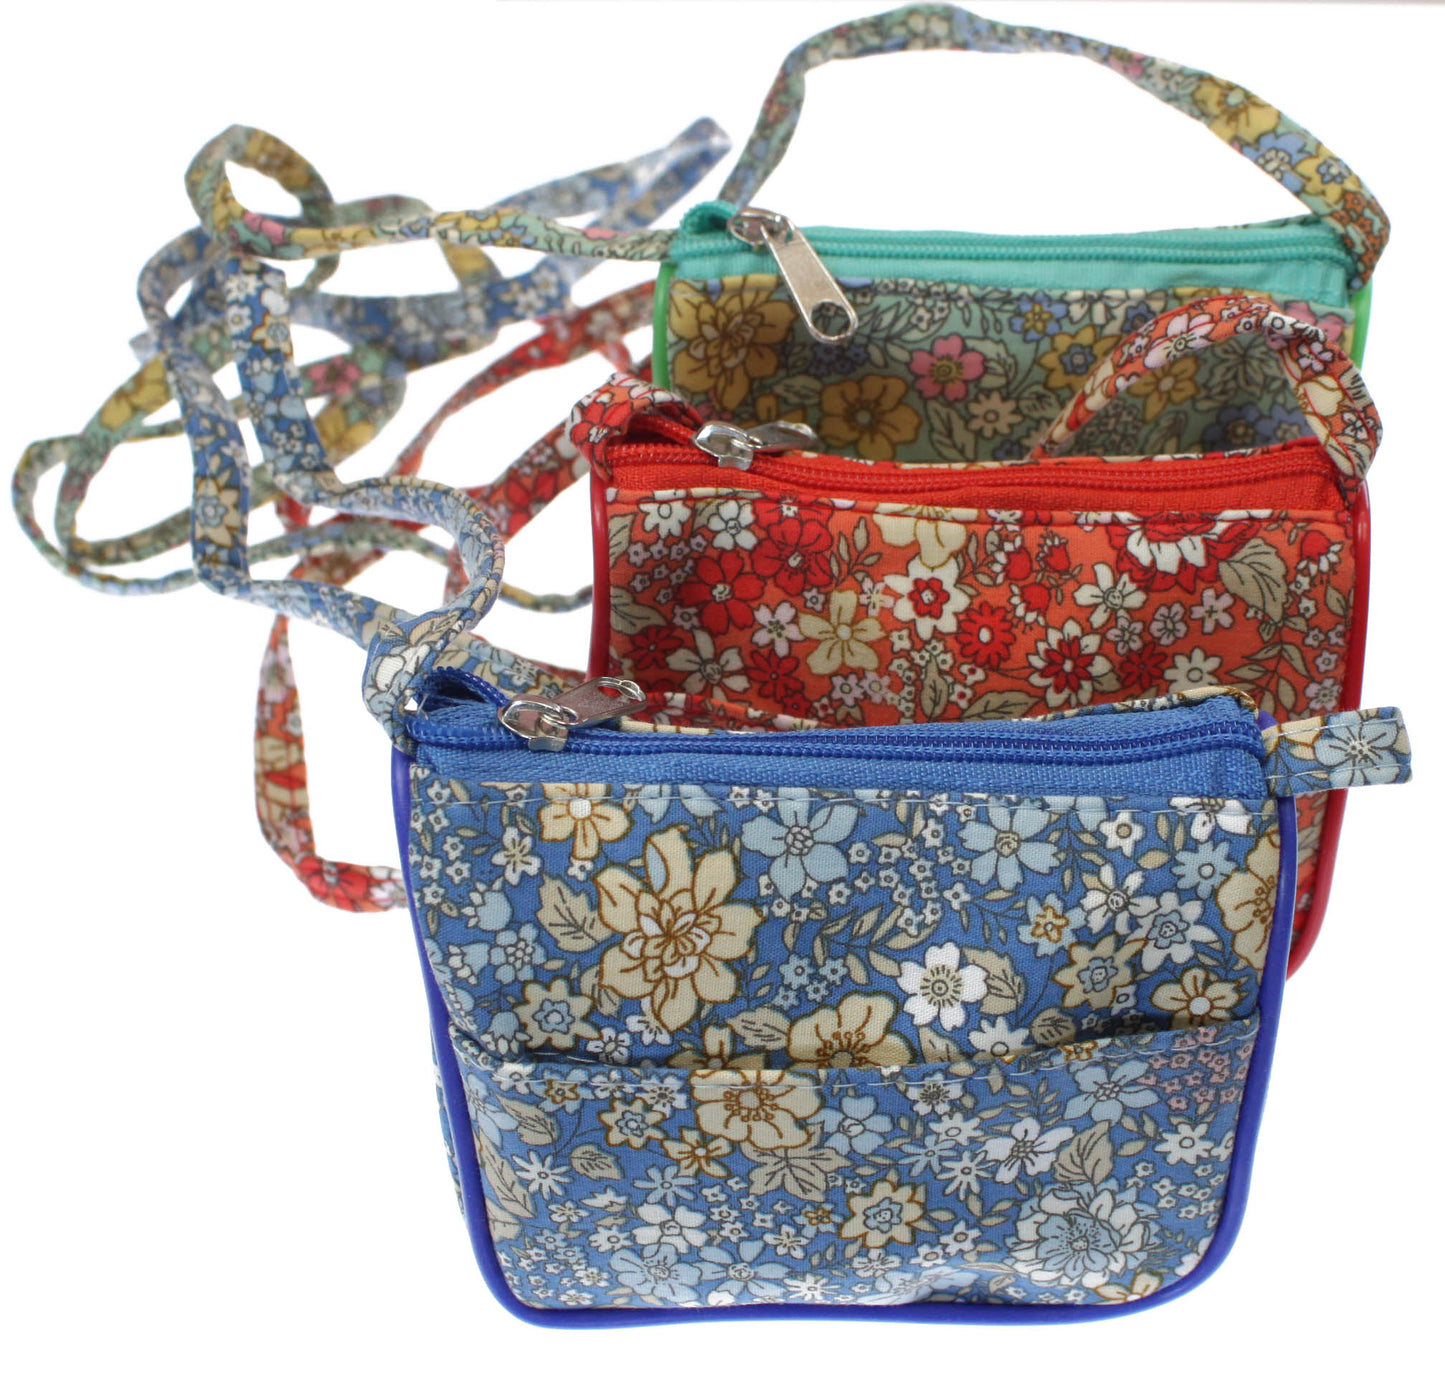 Ditsy Floral Shoulder Bag